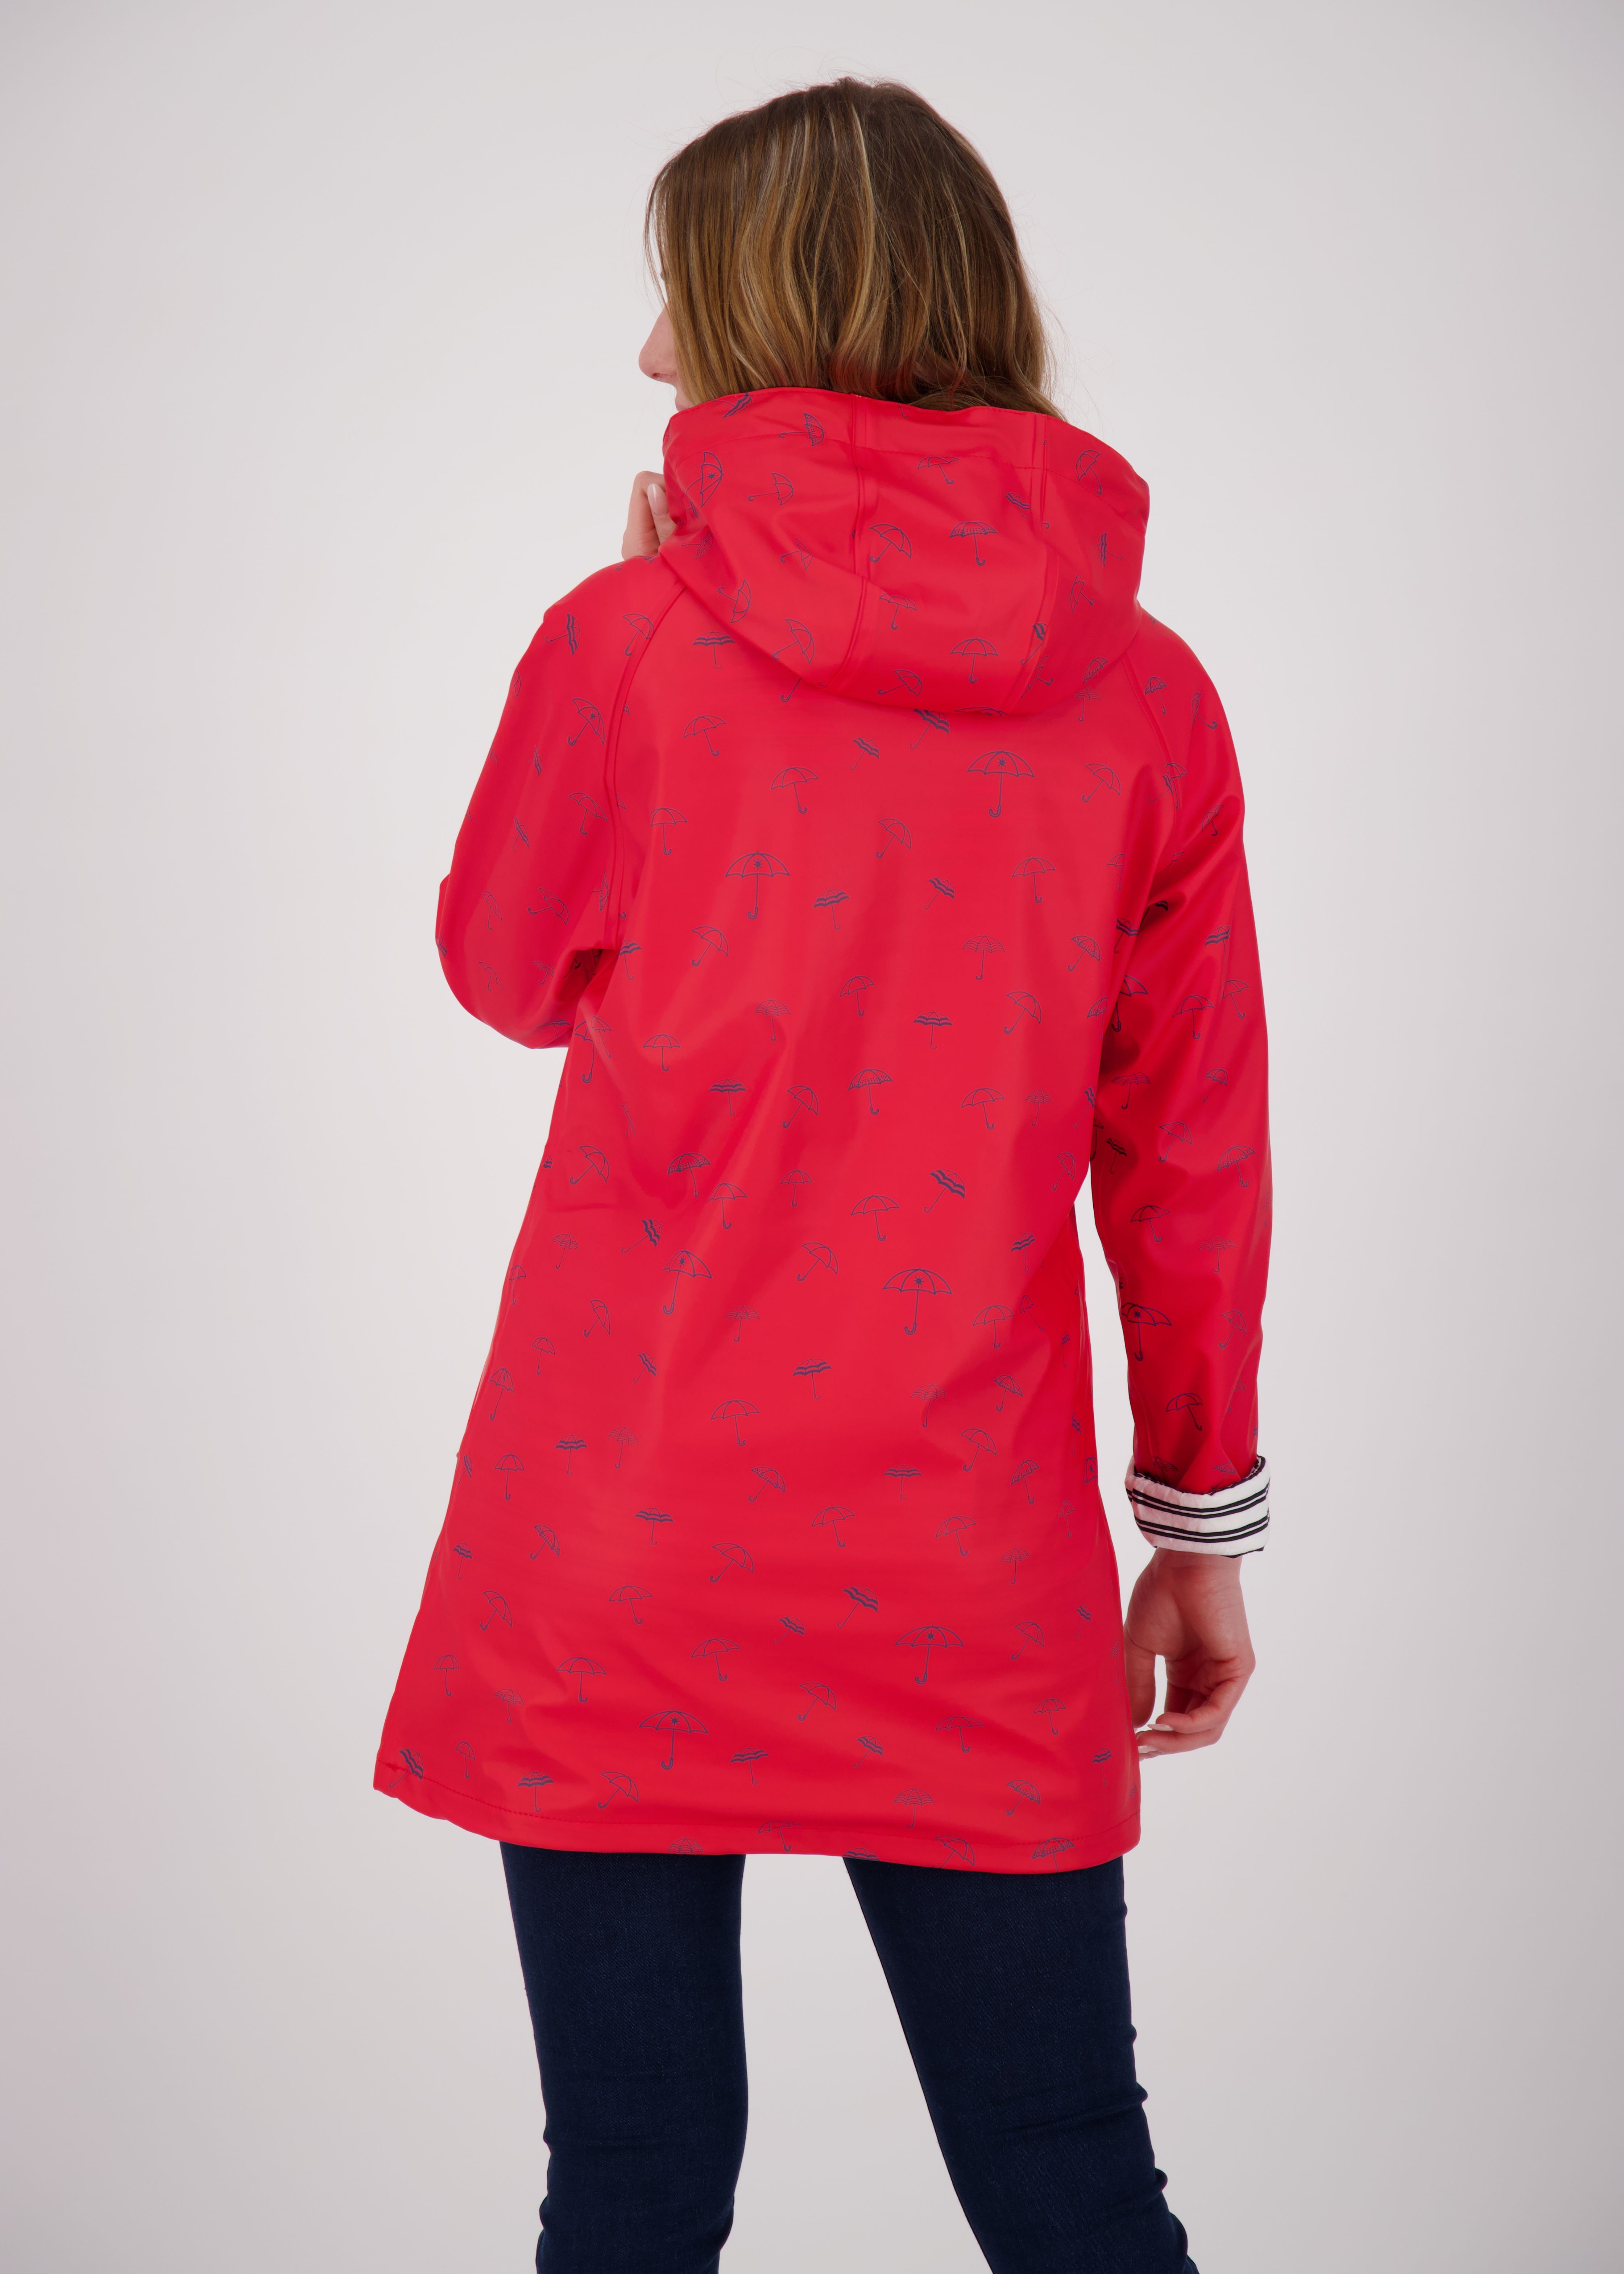 PEAK rot DEPROC auch Großen WOMEN Regenjacke in UMBR Friesennerz Active Größen WIZZARD erhältlich